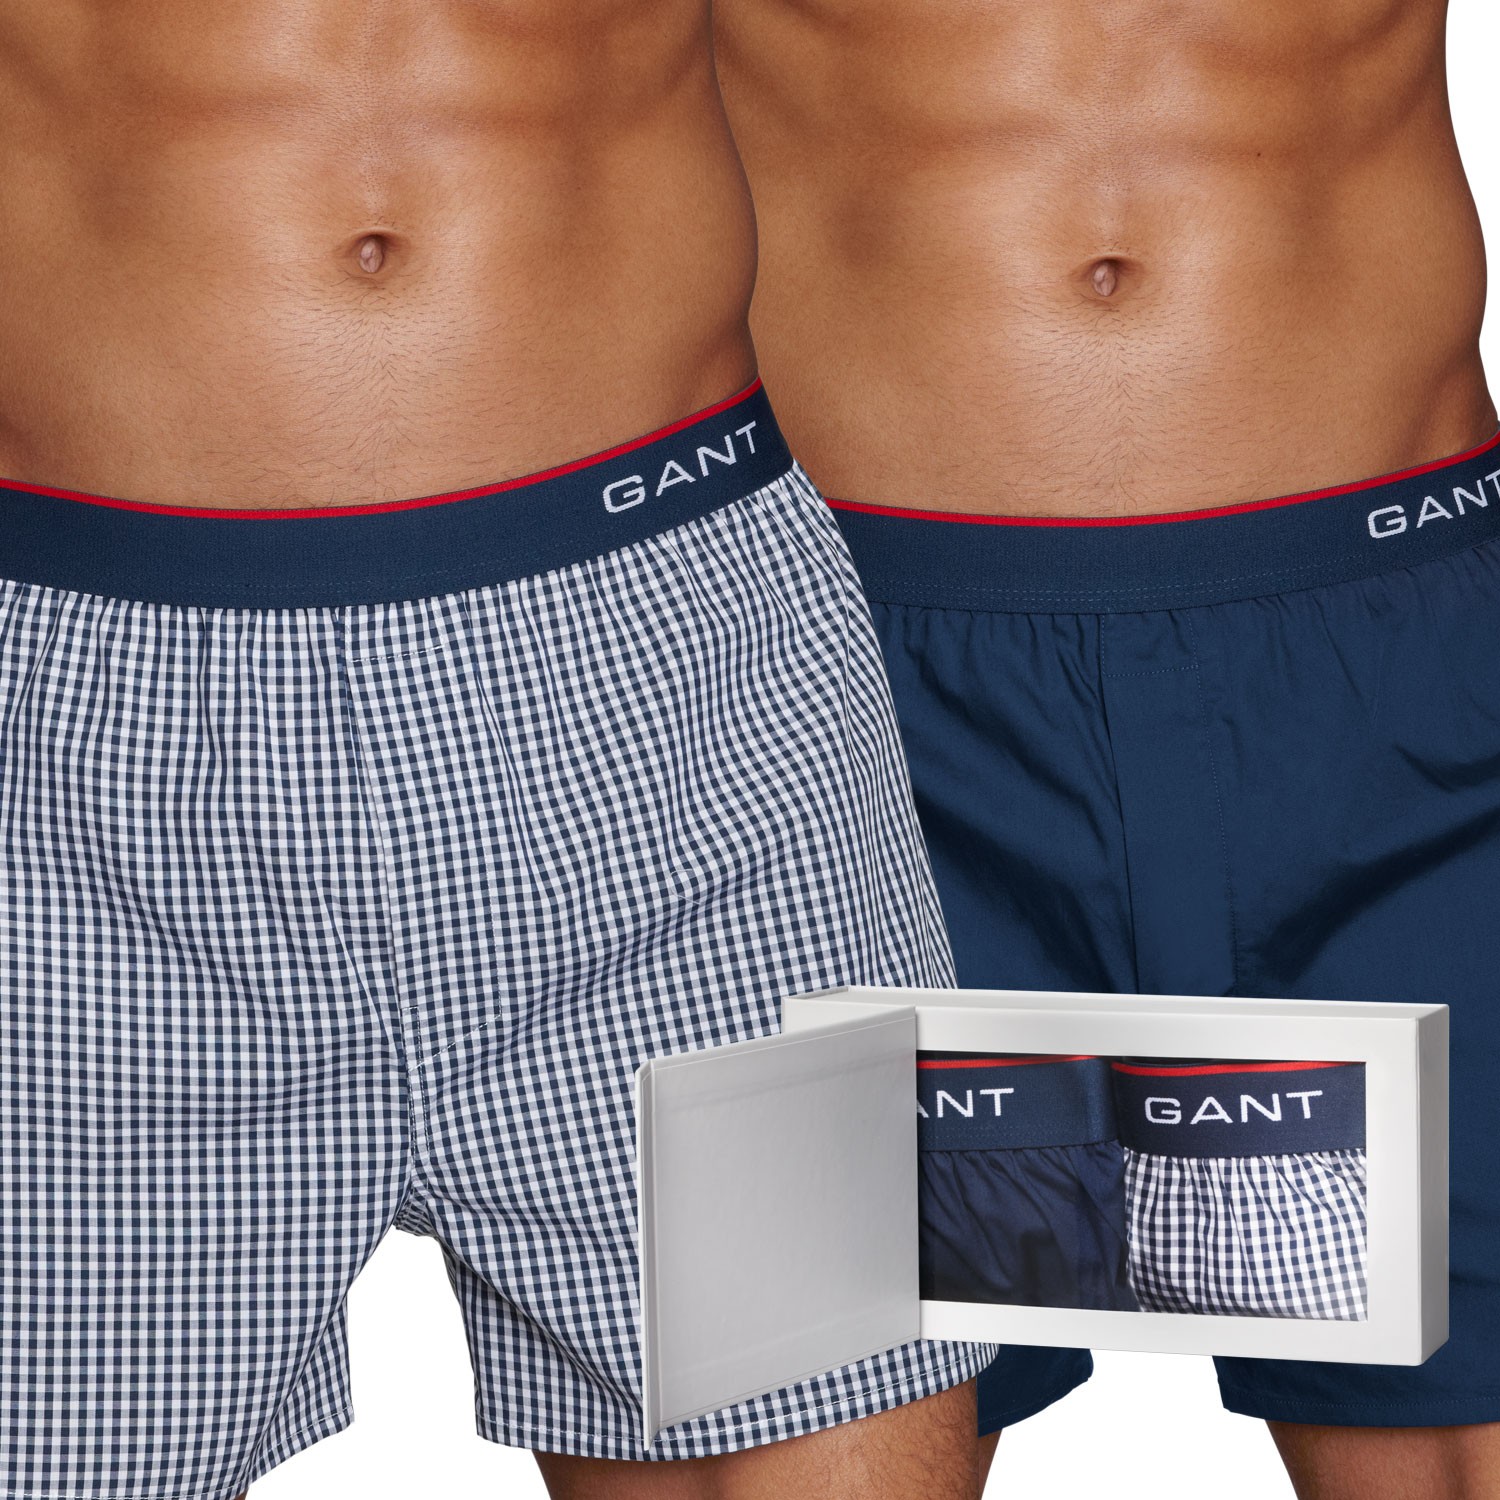 Gant Premium Woven Cotton Boxer Gift Box